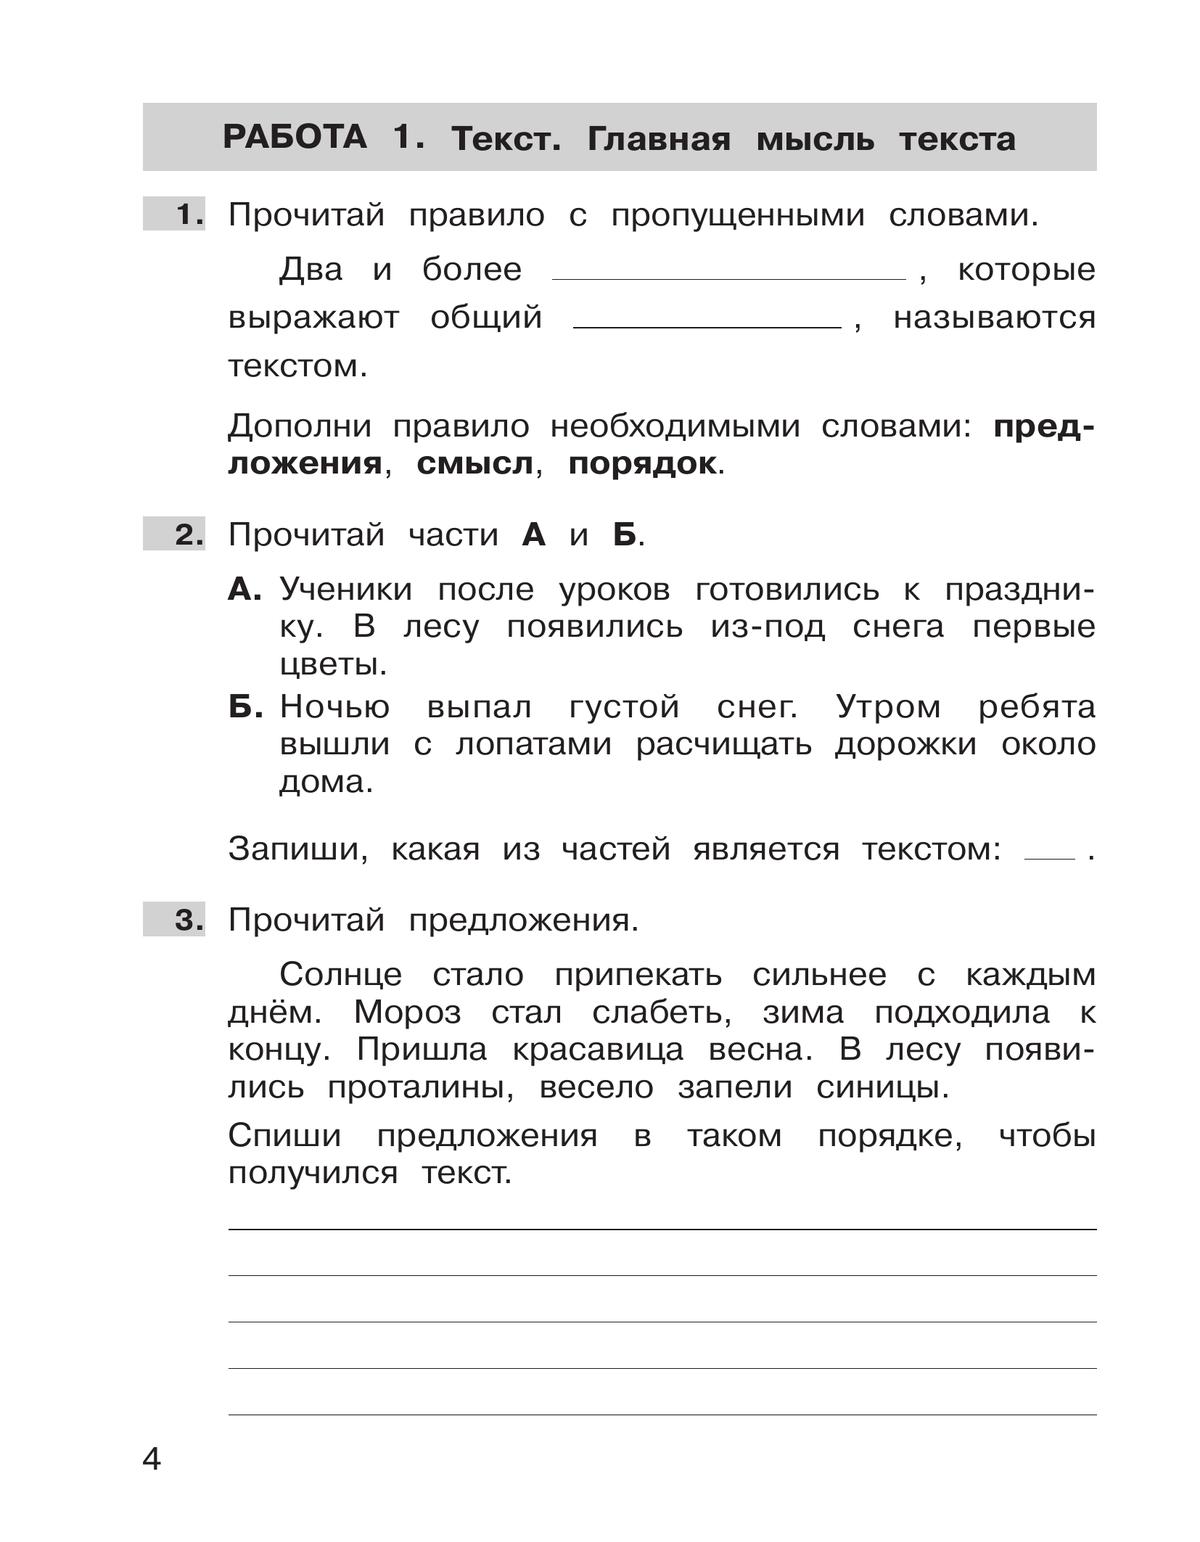 Самостоятельные работы по русскому языку. 2 класс купить на сайте группы  компаний «Просвещение»